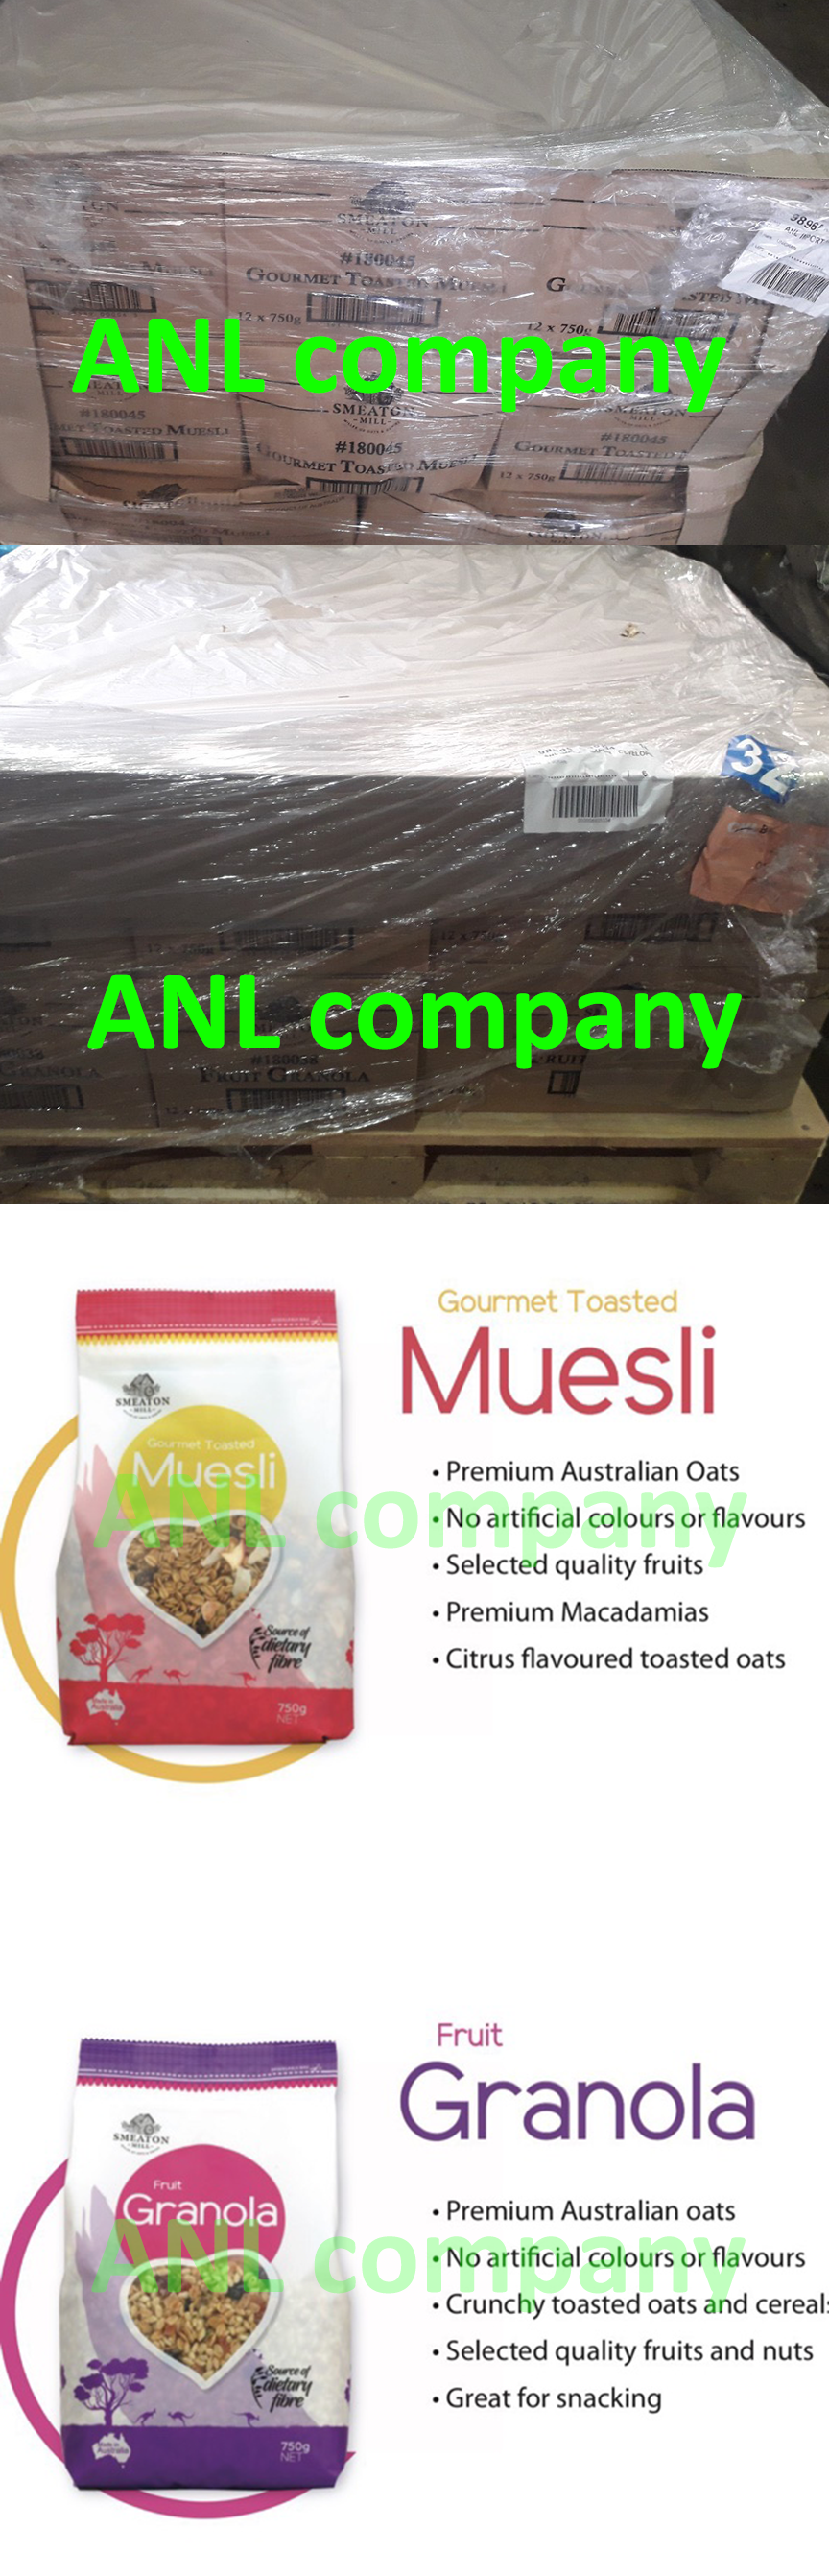 yến mạch hãng smeaton mill của Úc, được ANL chúng tôi nhập khẩu về Việt Nam. và cung cấp cho các đại lý với giá sỉ